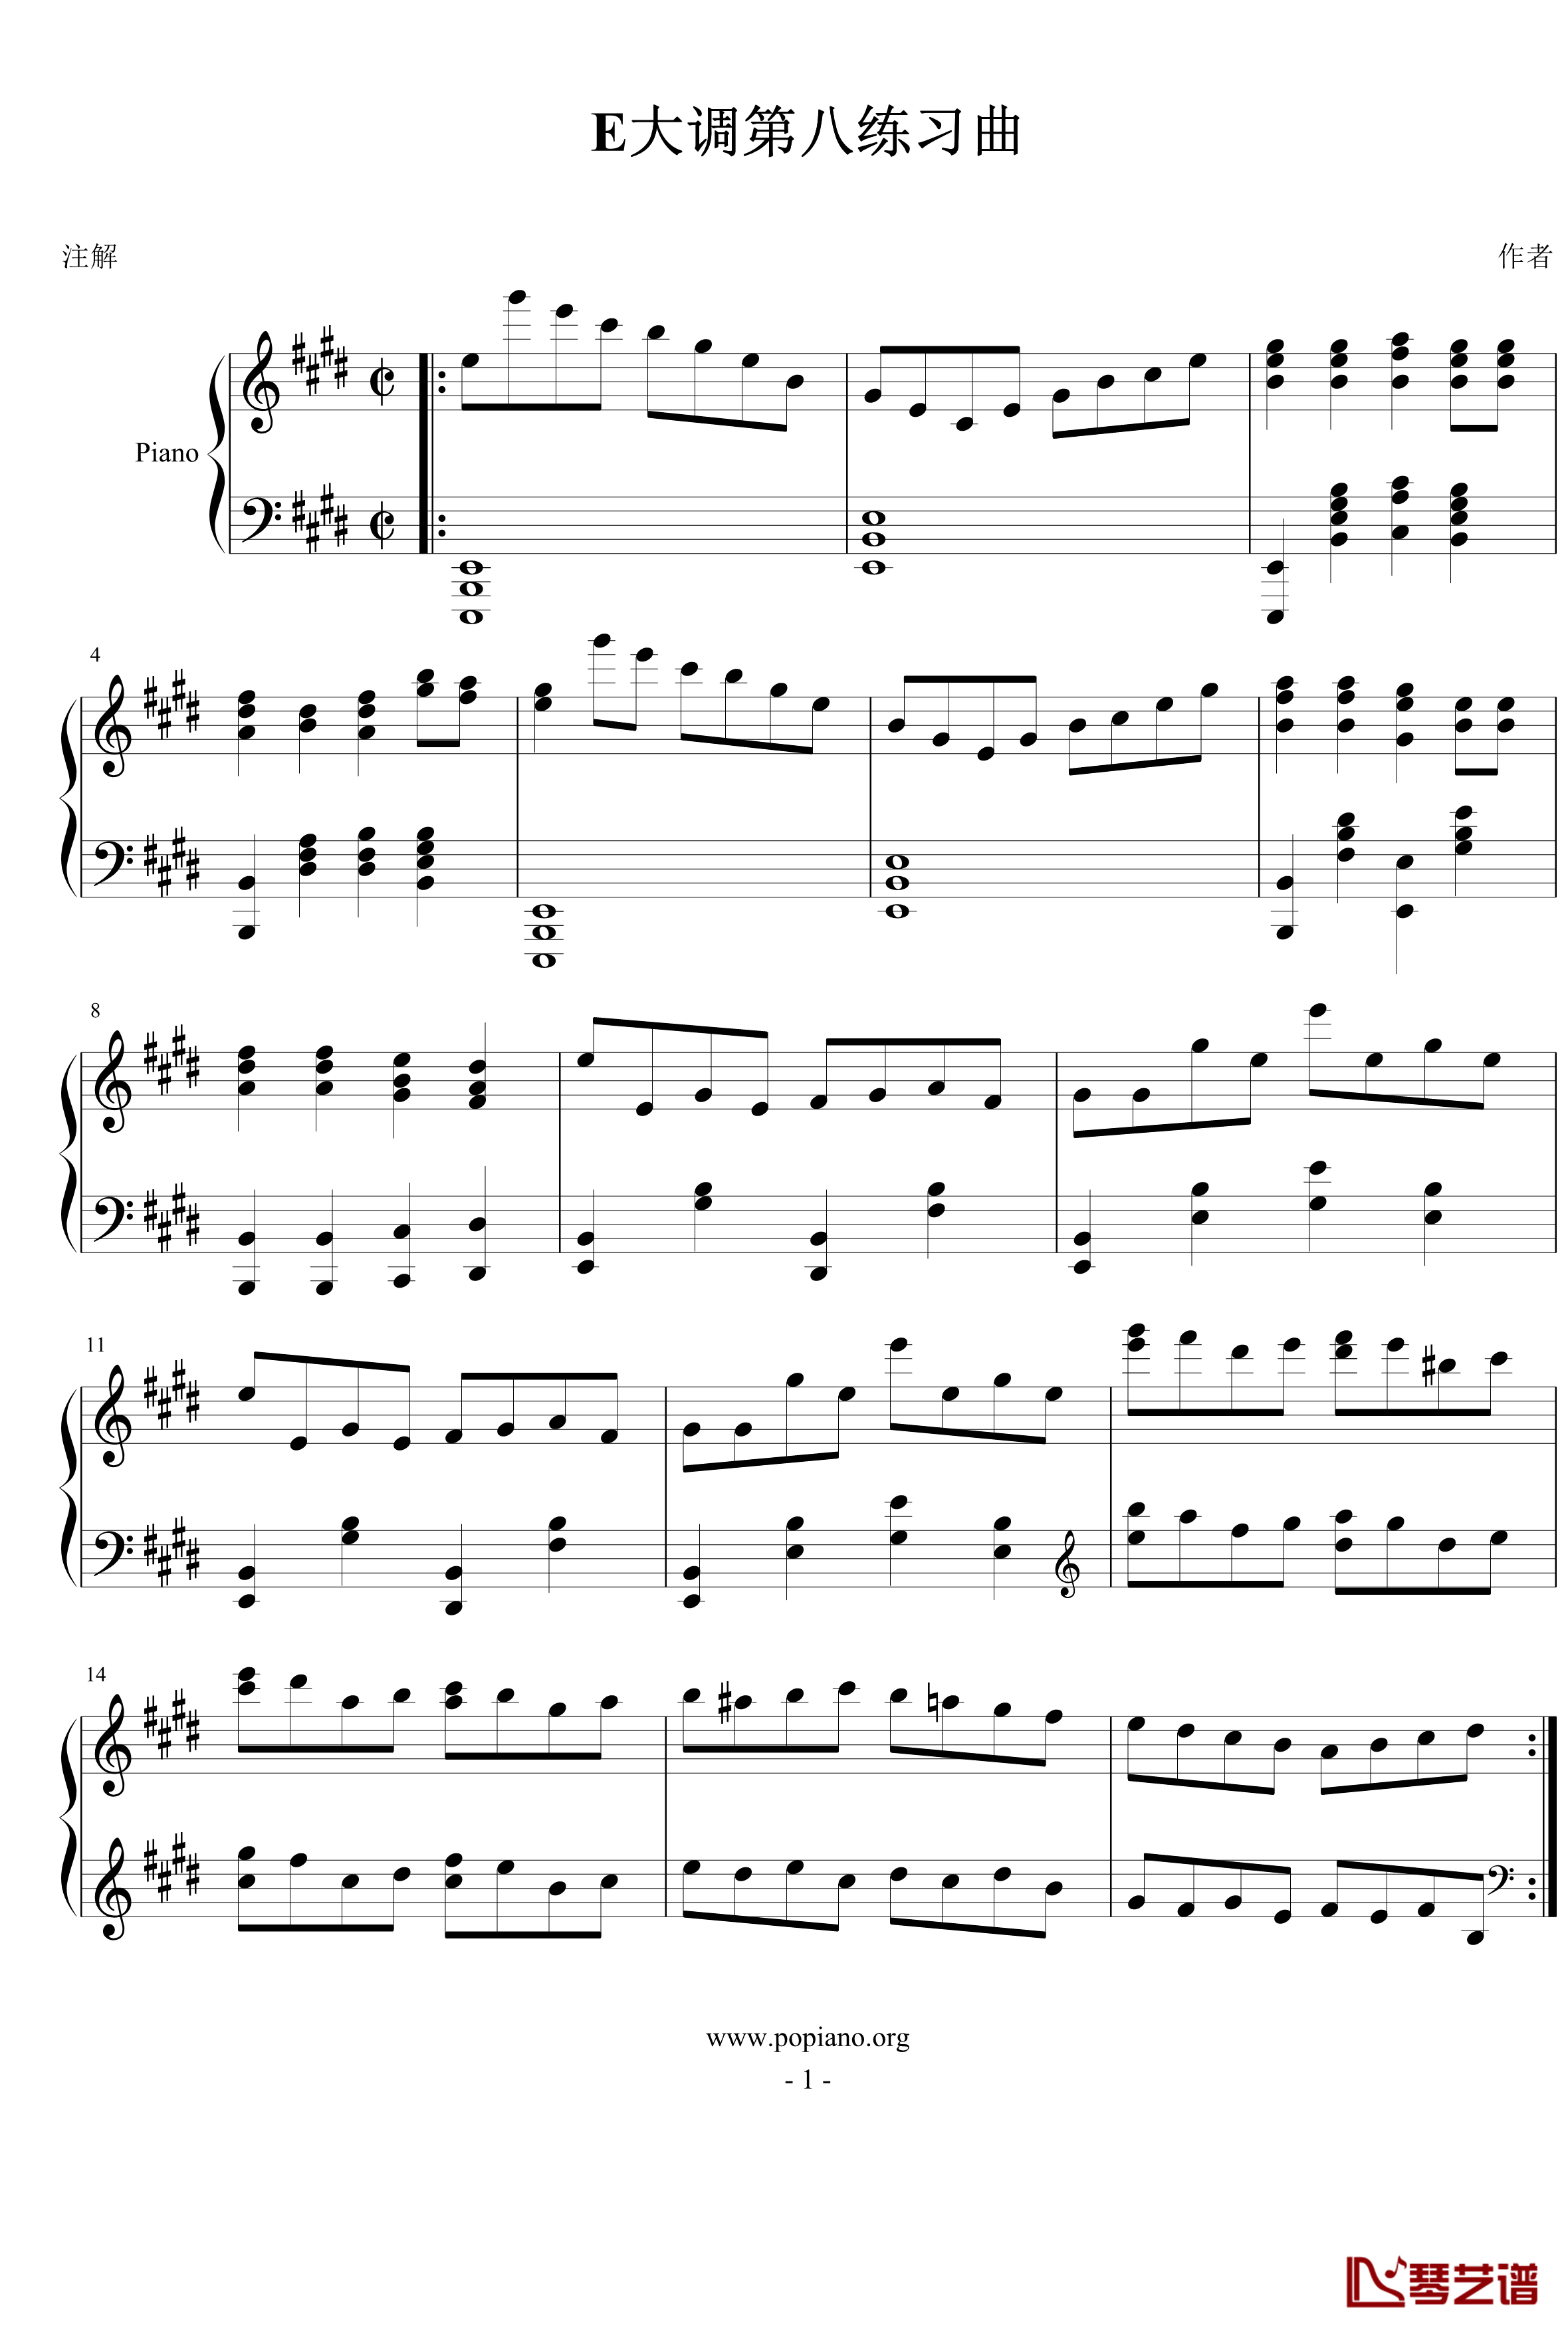 E大调第八练习曲钢琴谱-PARROT1861